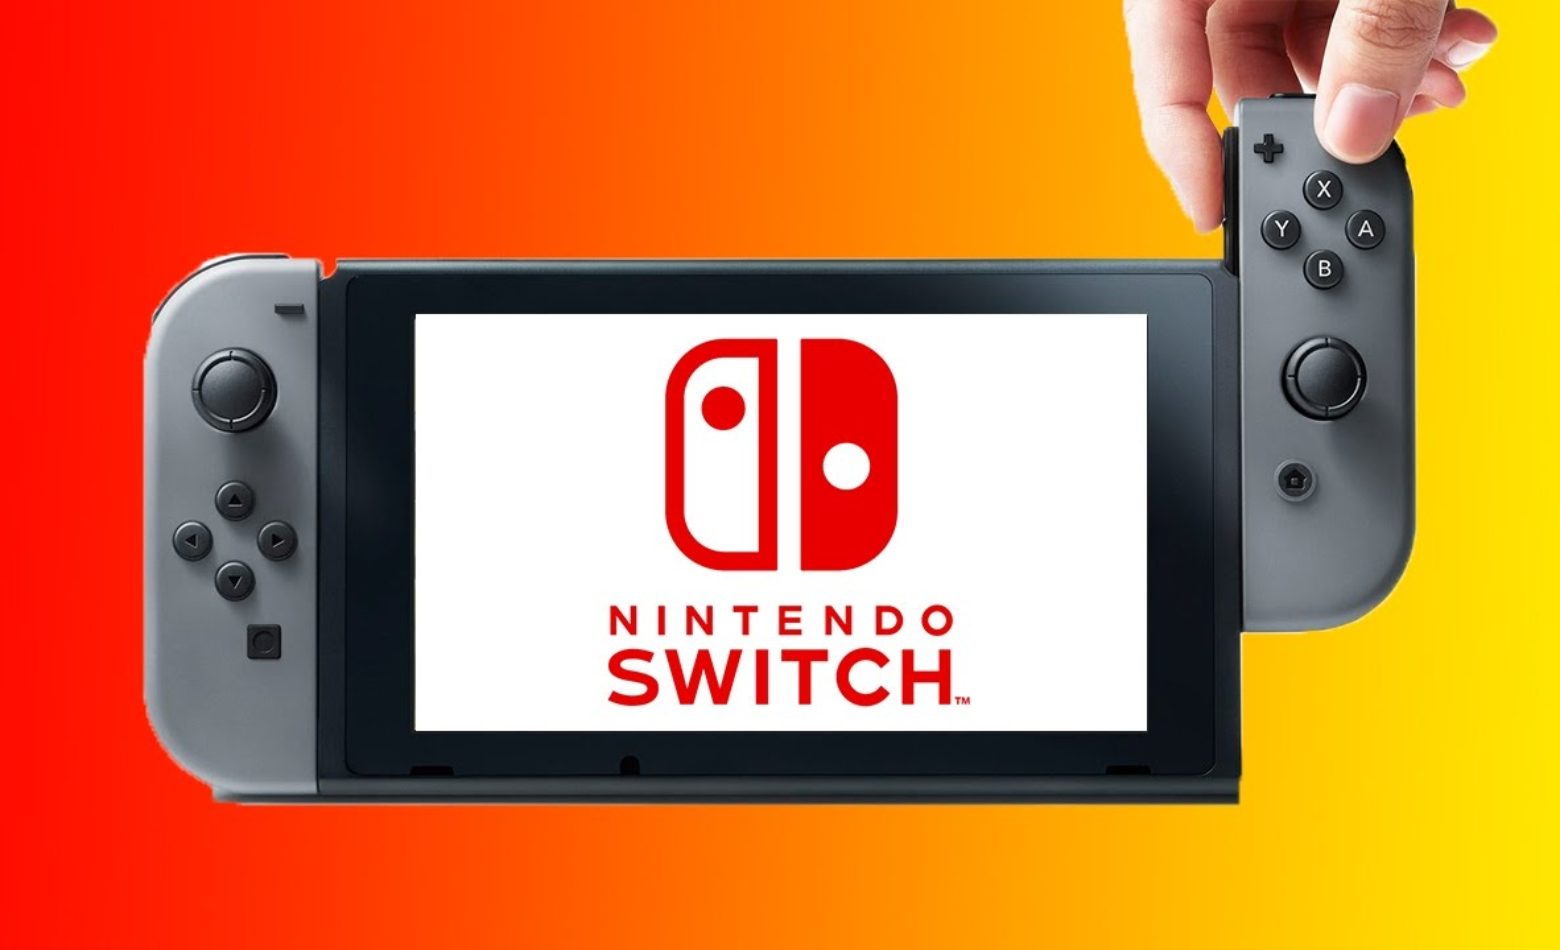 PROMOÇÃO: ganhe um Nintendo Switch do NGP!